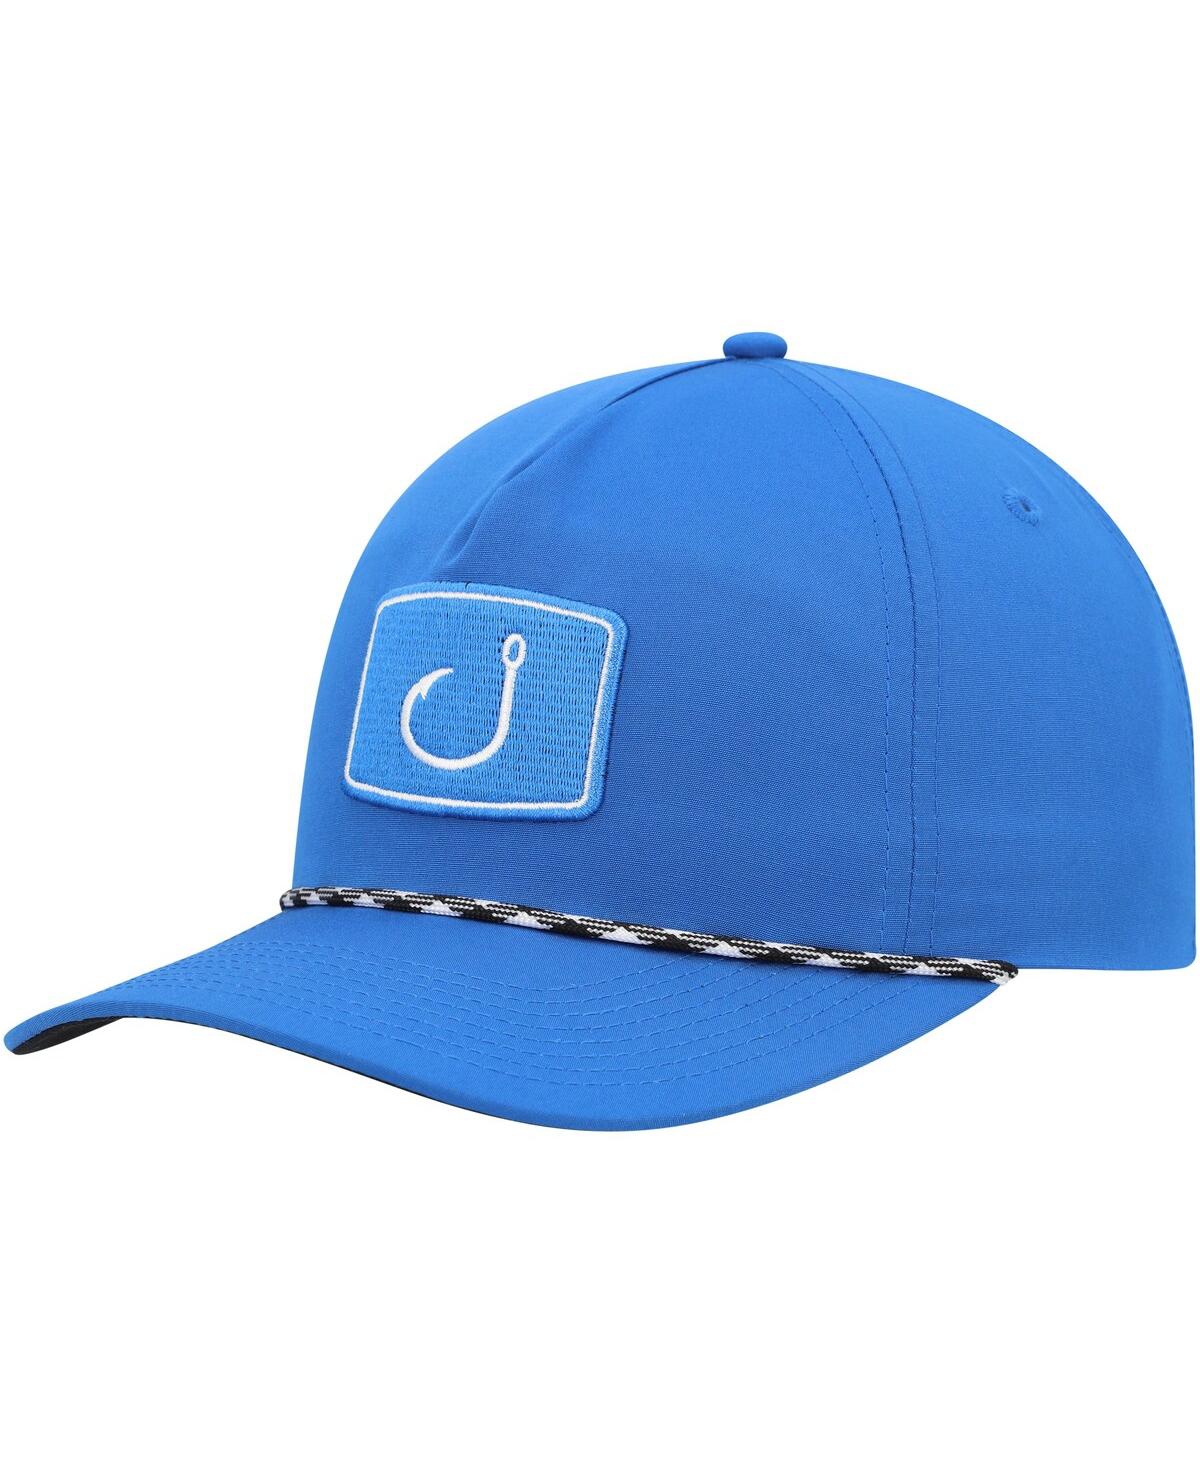 Avid Men's  Blue Keys Snapback Hat